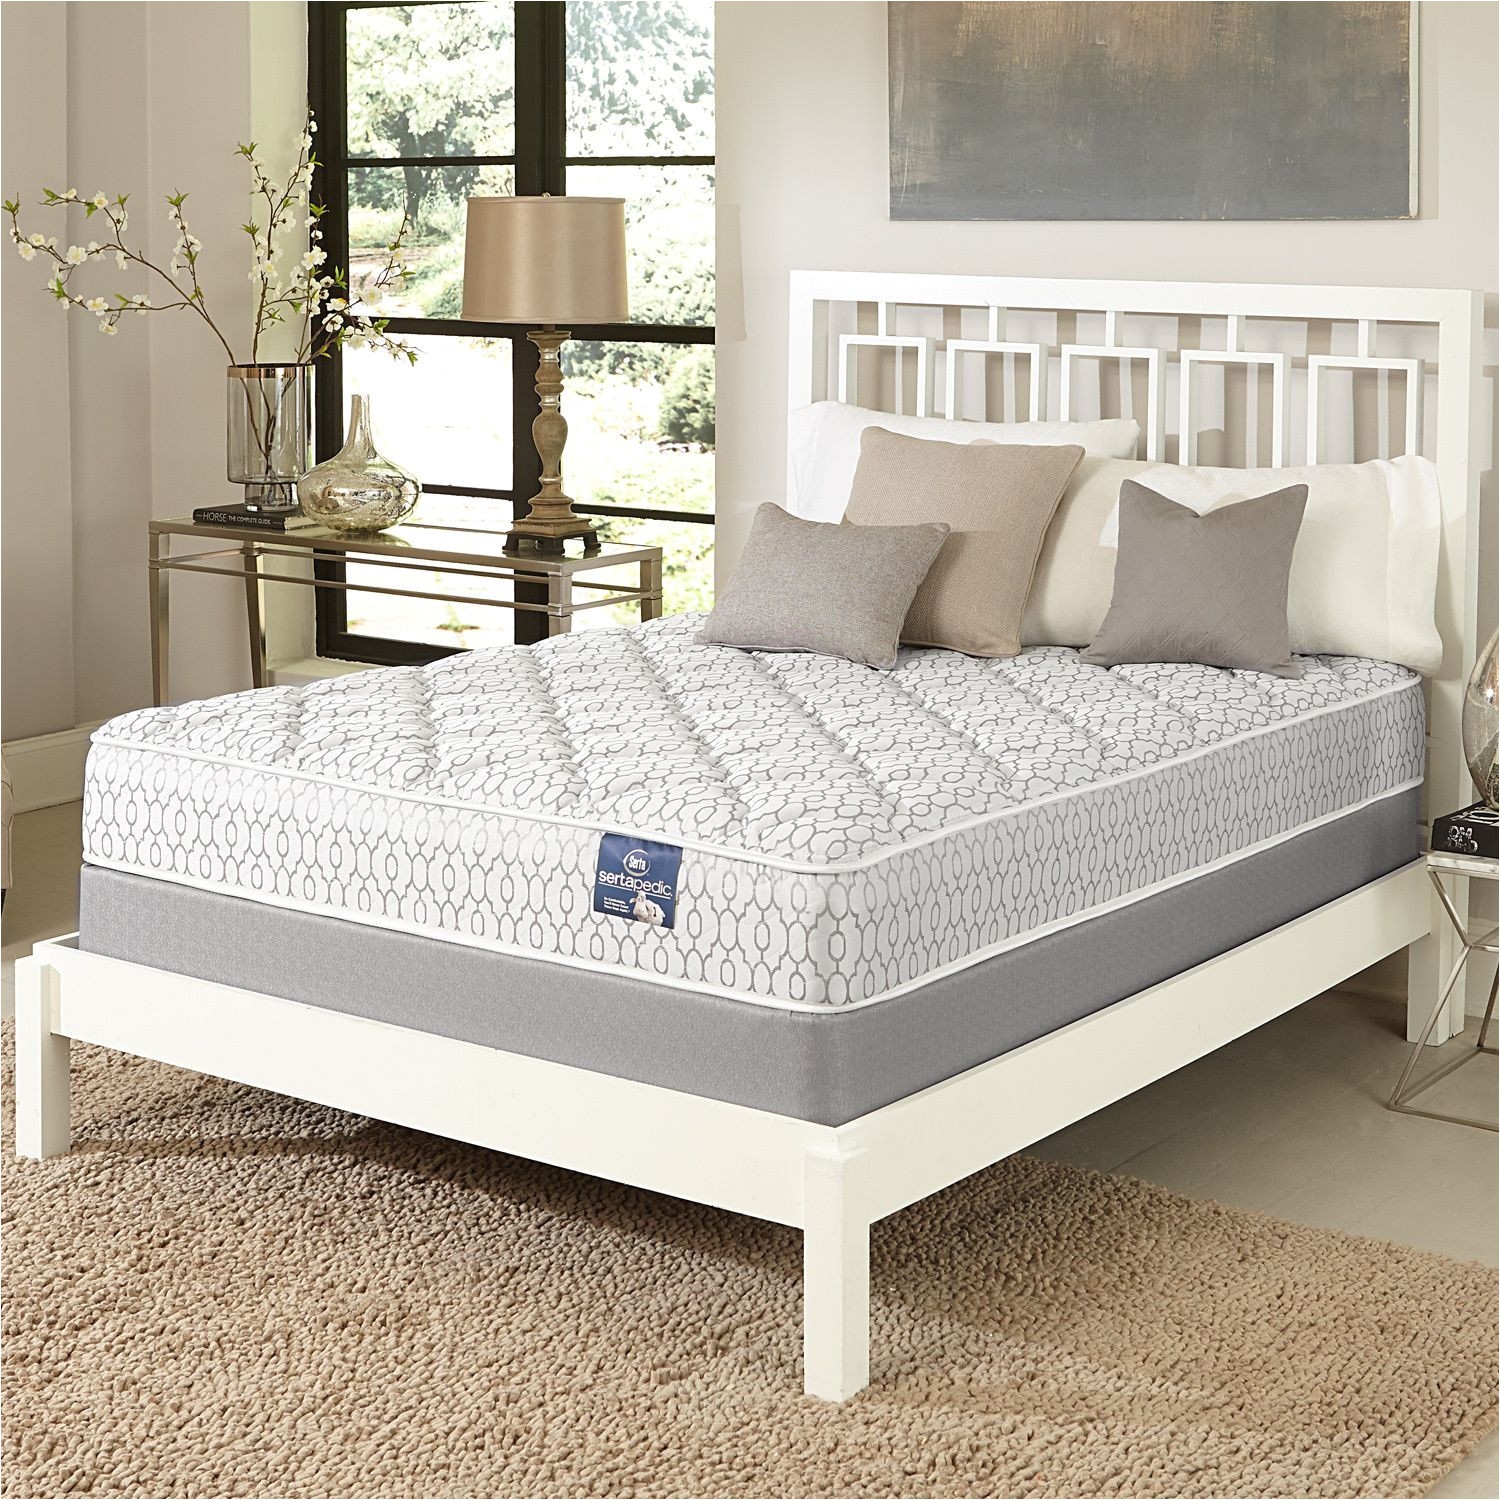 serta gleam plush twin xl size mattress set twin xl mattress with 9 profile boxspring white platinum